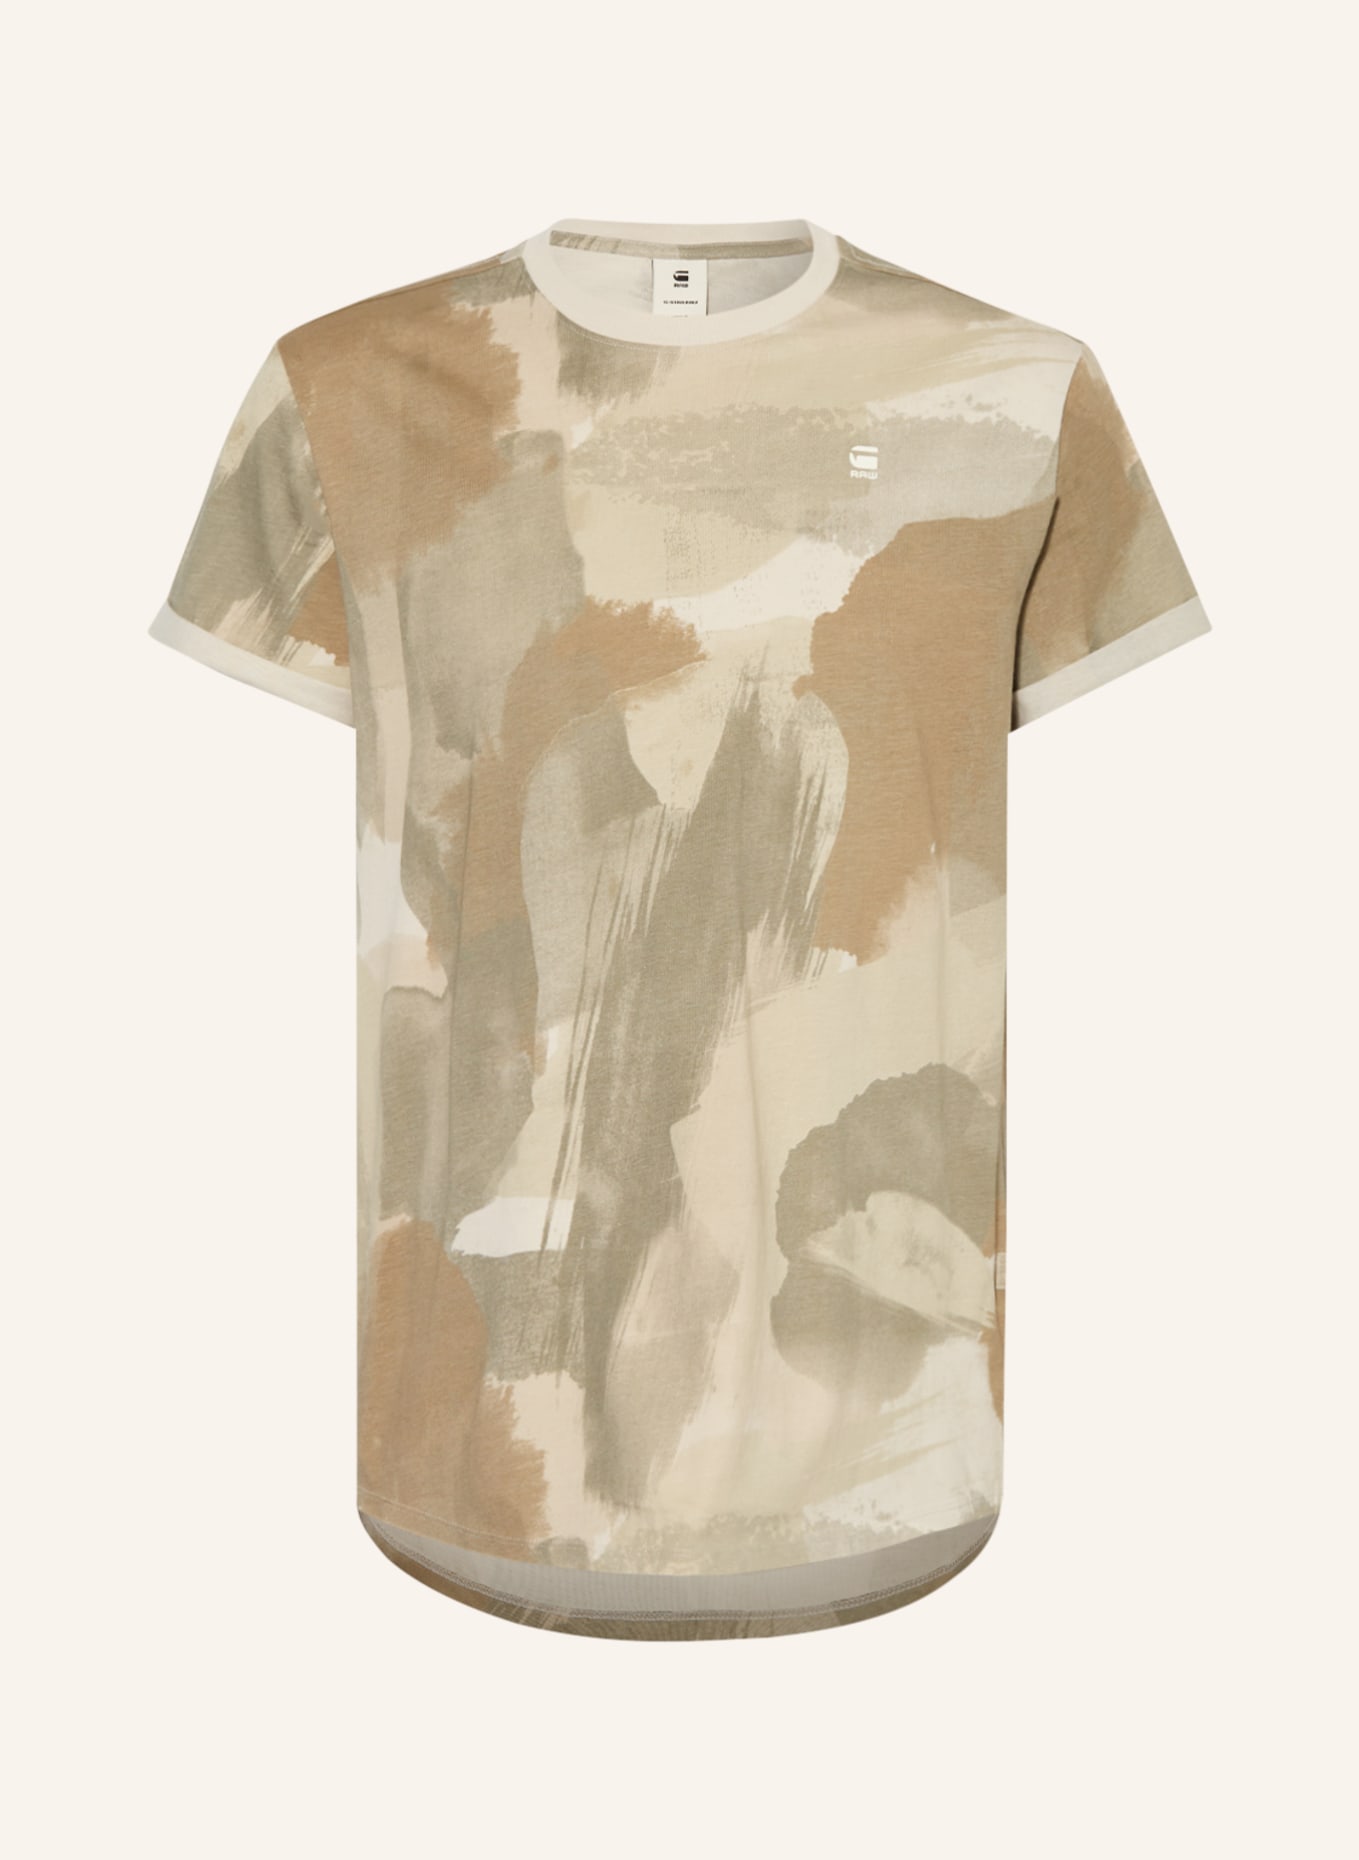 G-Star RAW T-Shirt LASH, Farbe: OLIV/ BEIGE/ KHAKI (Bild 1)